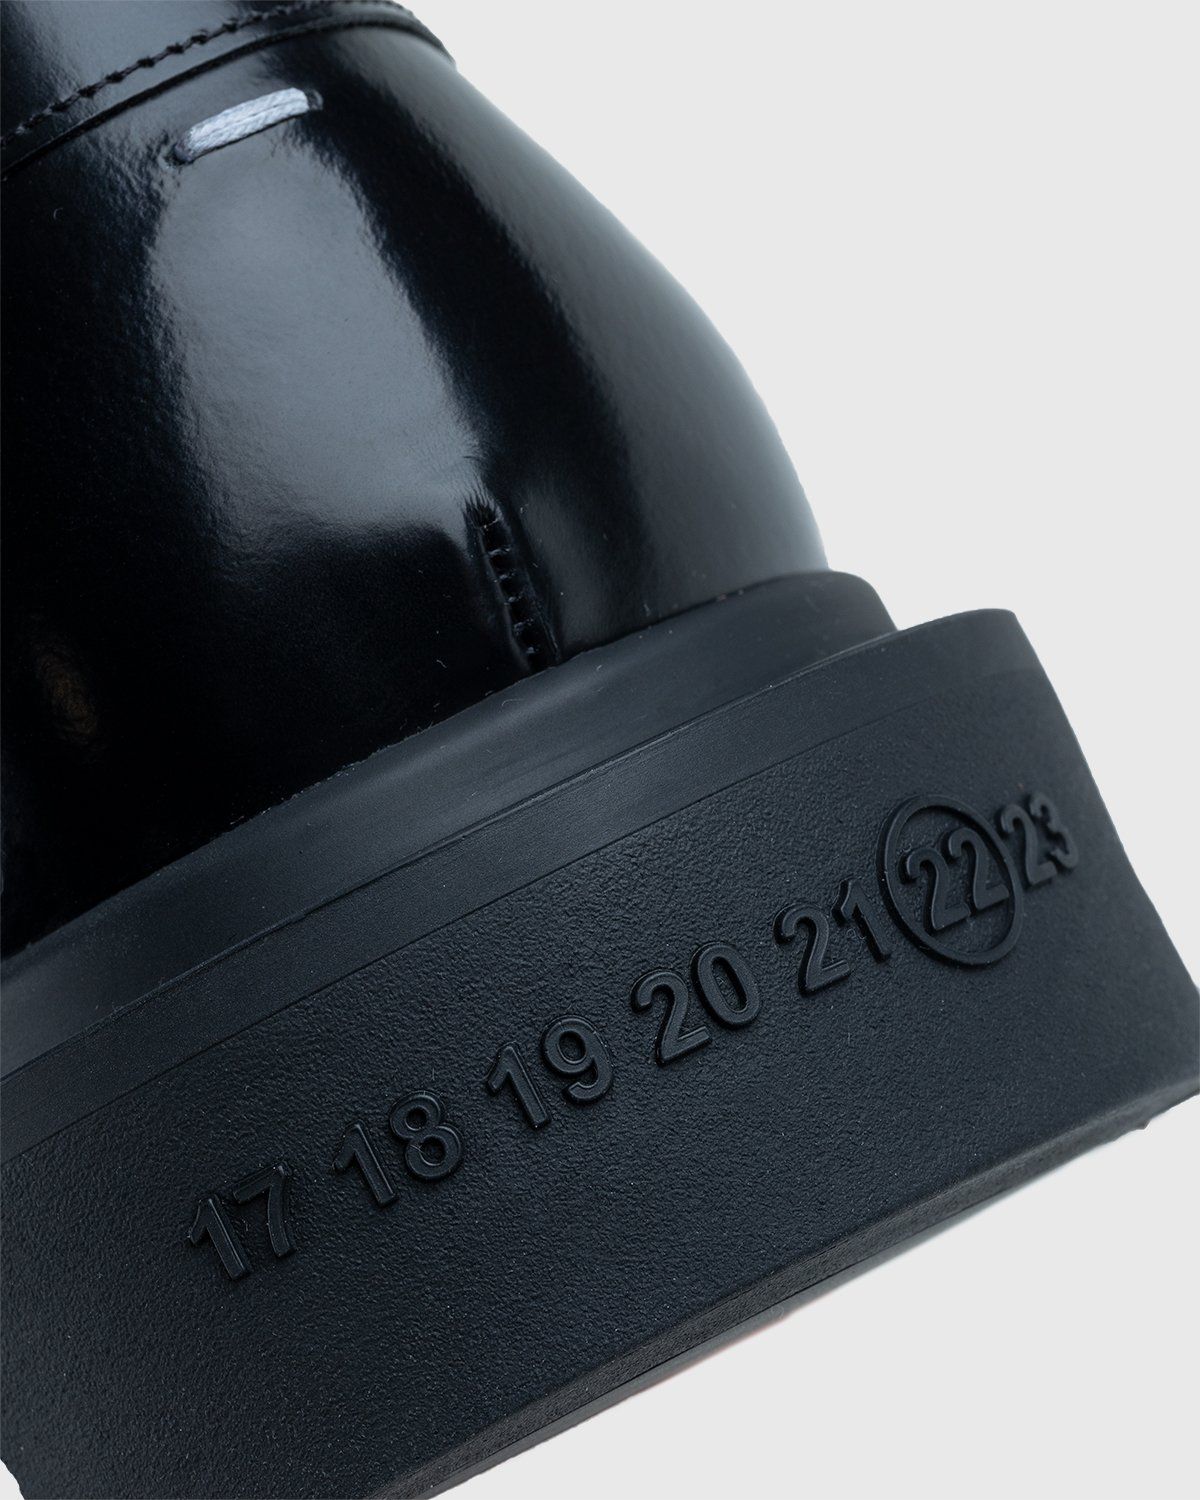 Maison Margiela – Leather Loafers Black - Shoes - Black - Image 5